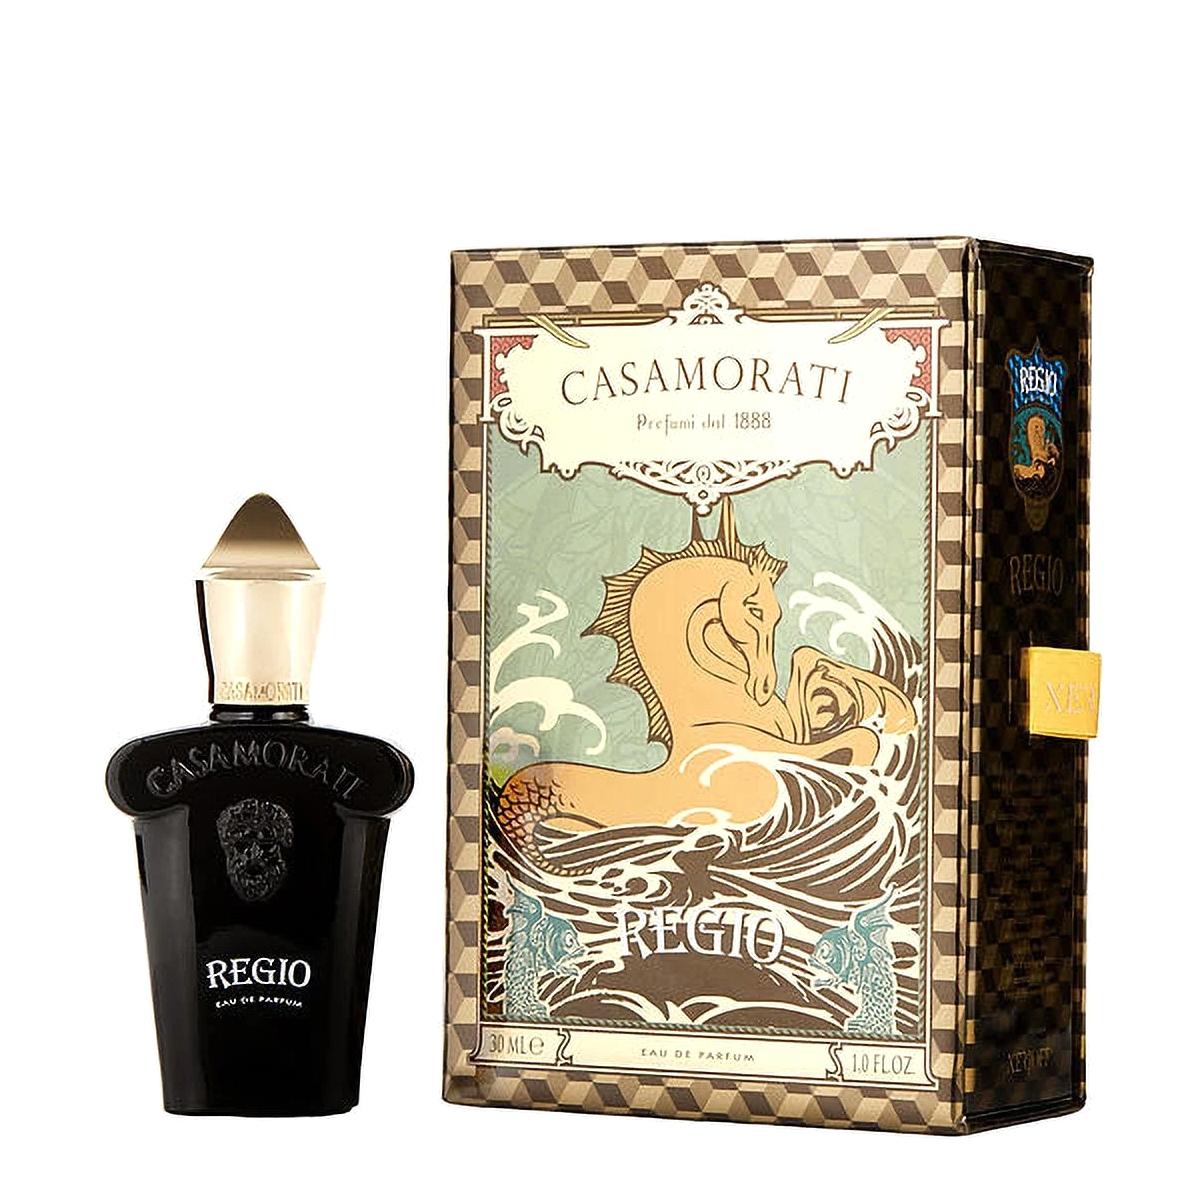 CASAMORATI Unisex parfem1888 Regio EDP 30ml